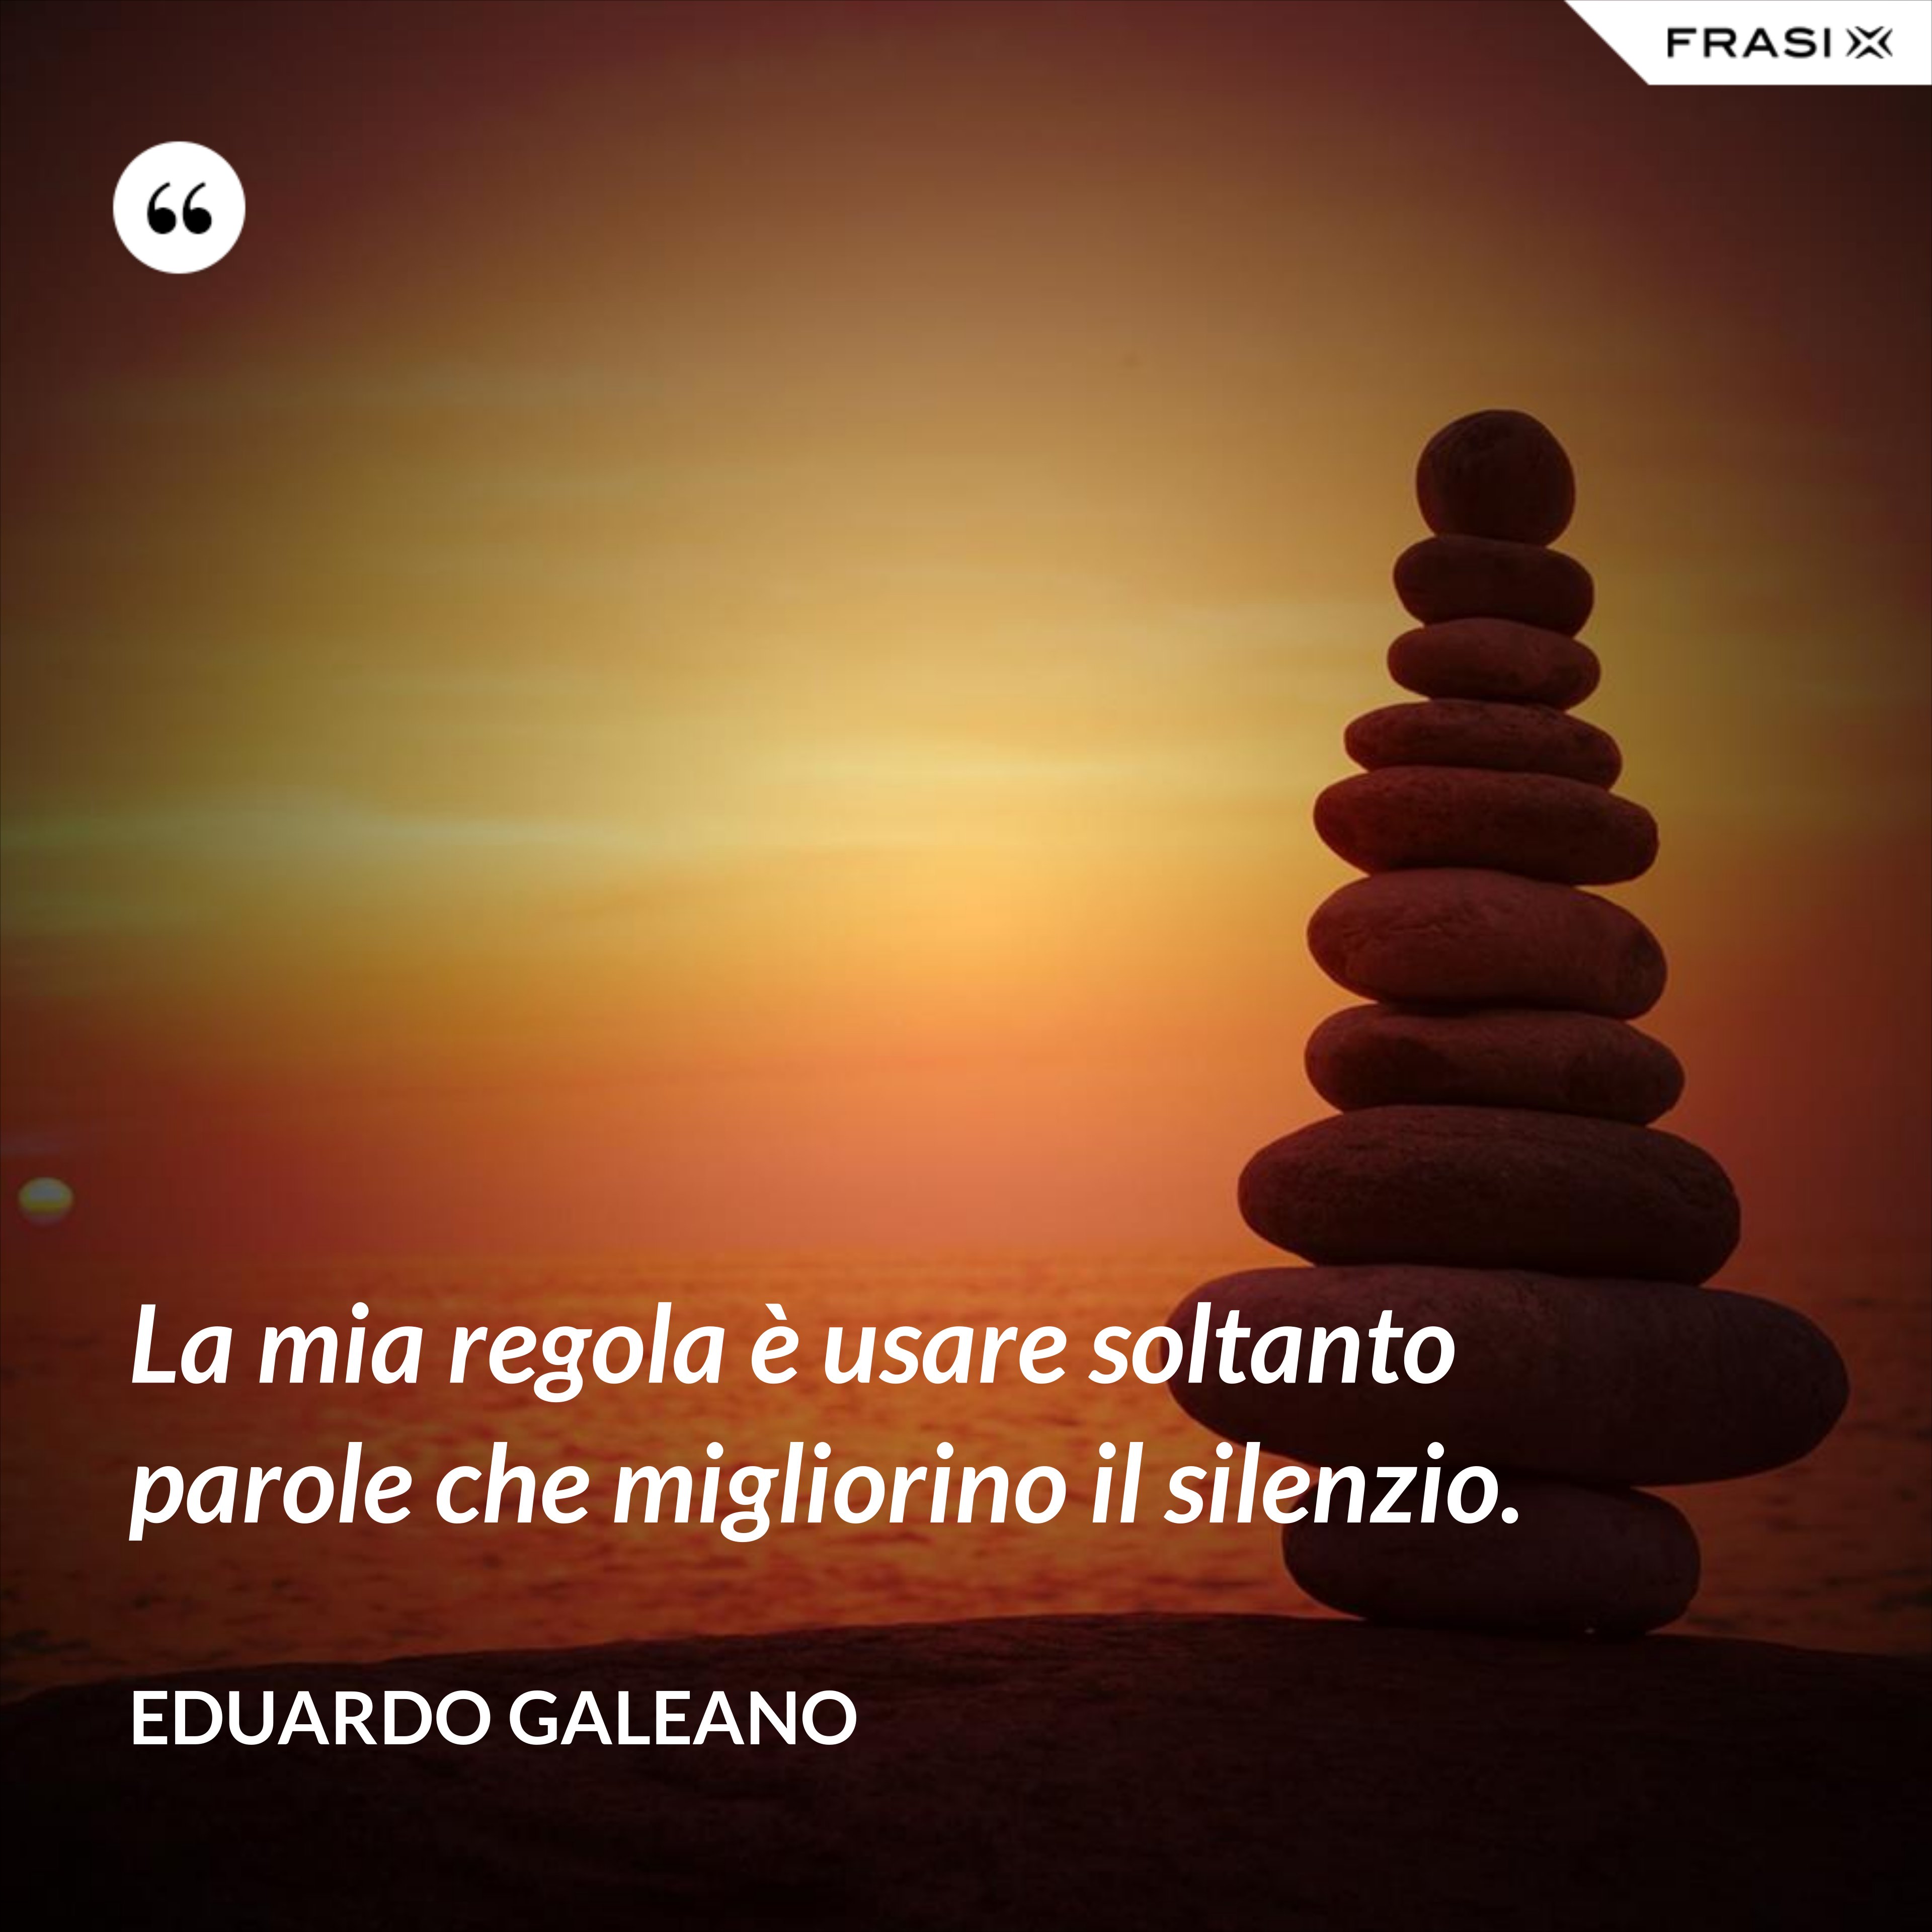 La mia regola è usare soltanto parole che migliorino il silenzio. - Eduardo Galeano